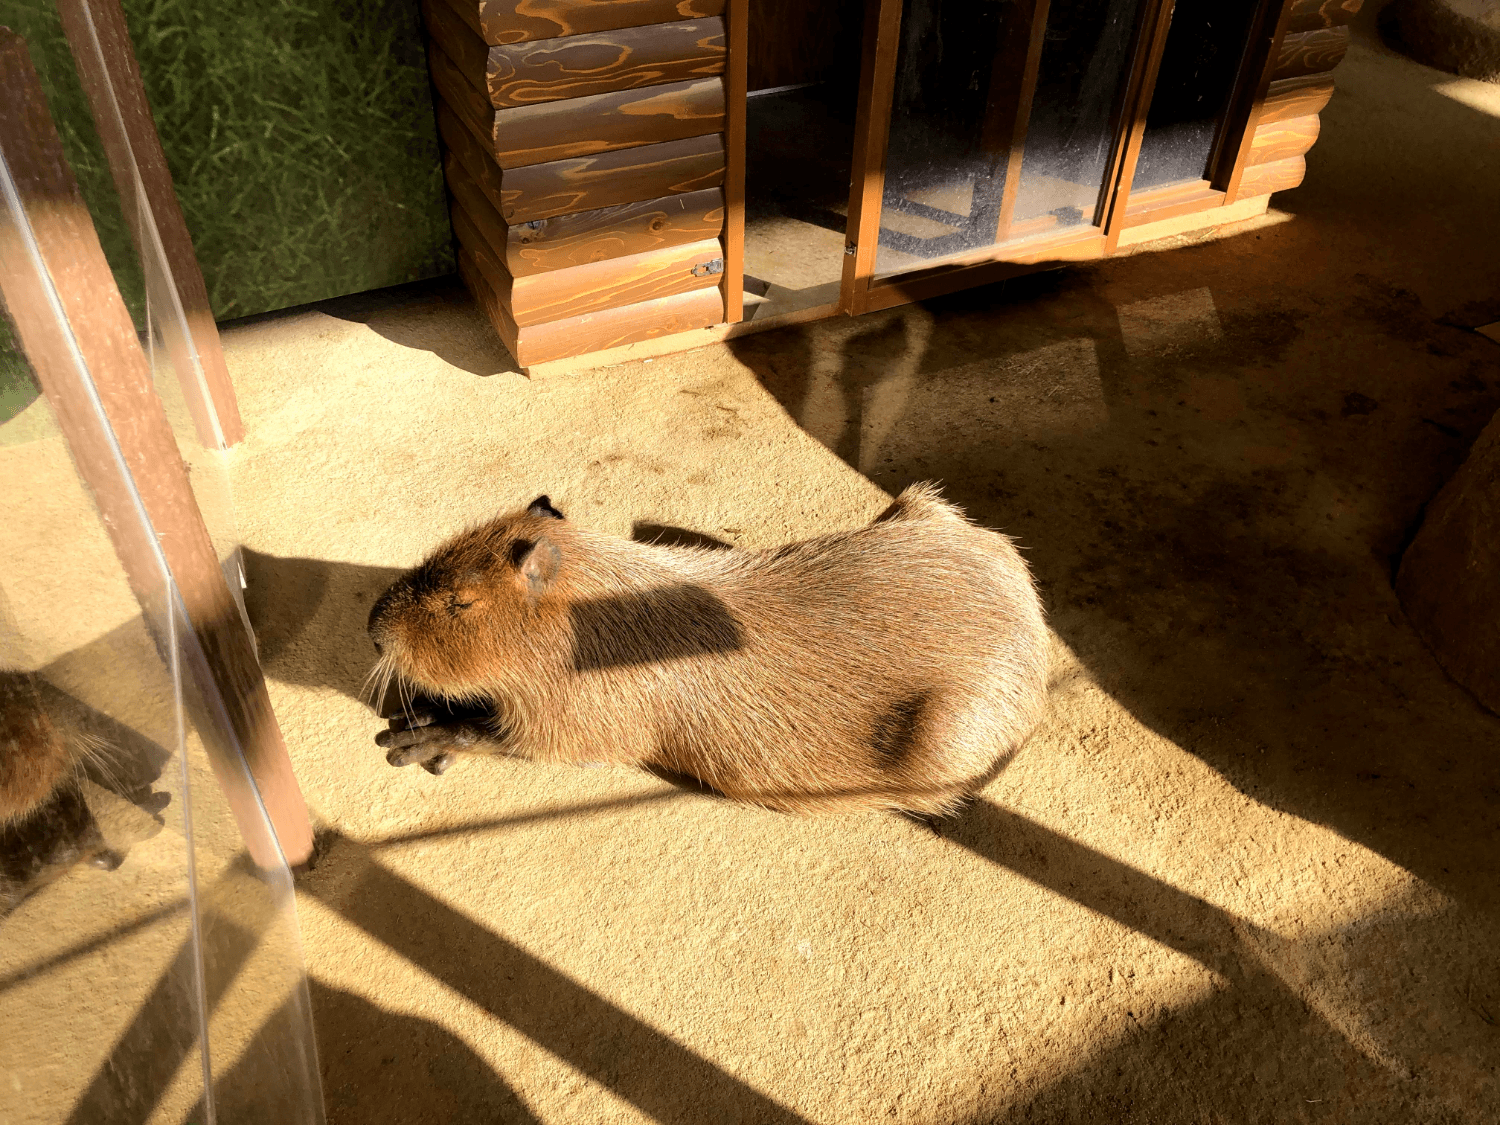 The Capybara Exhibit at Enoshima Aquarium